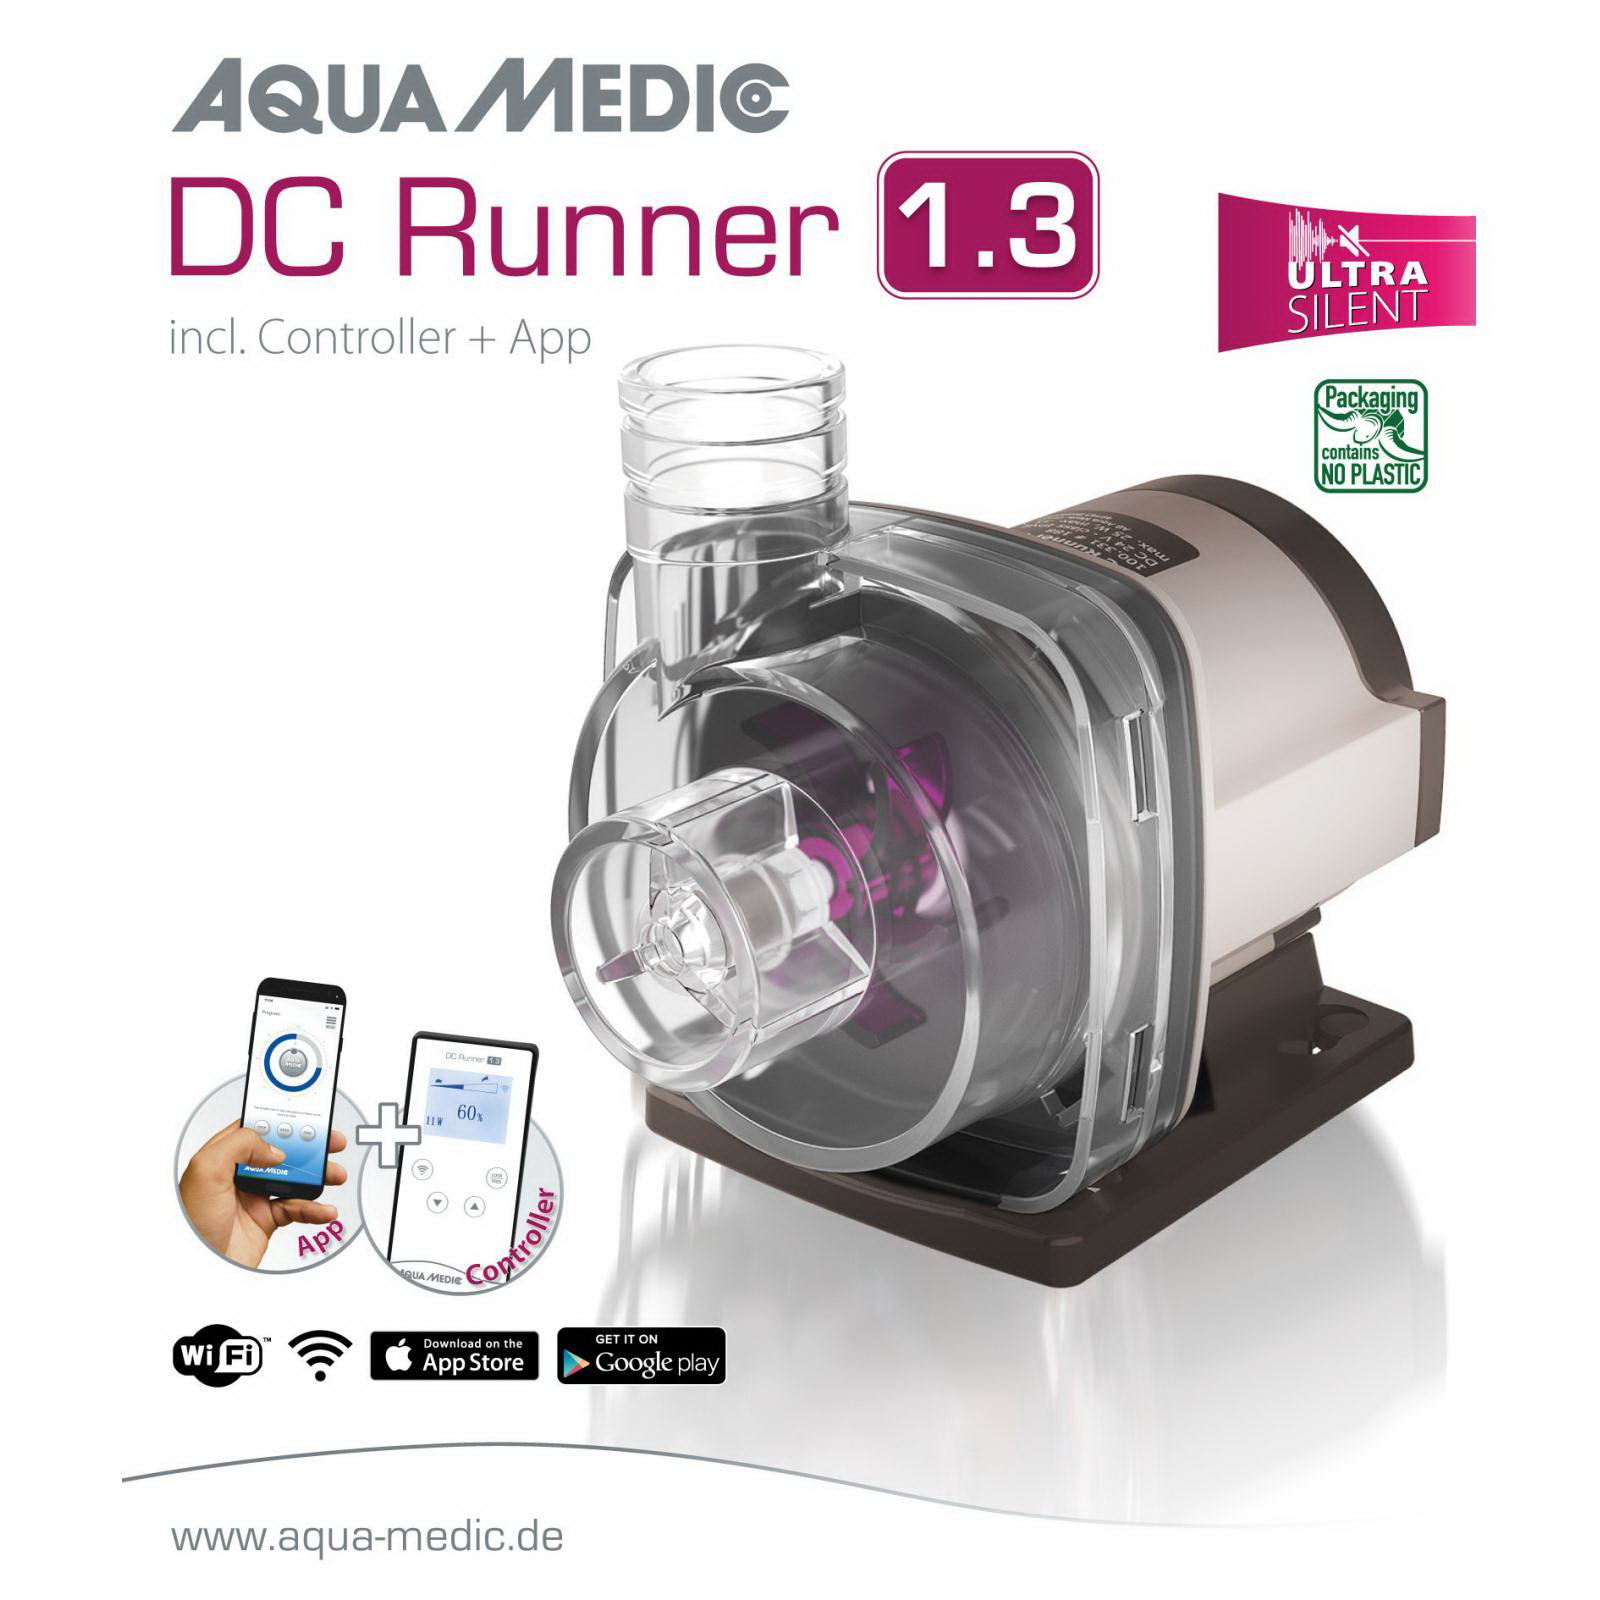 Універсальний насос для акваріума Aqua Medic DC Runner 1.3